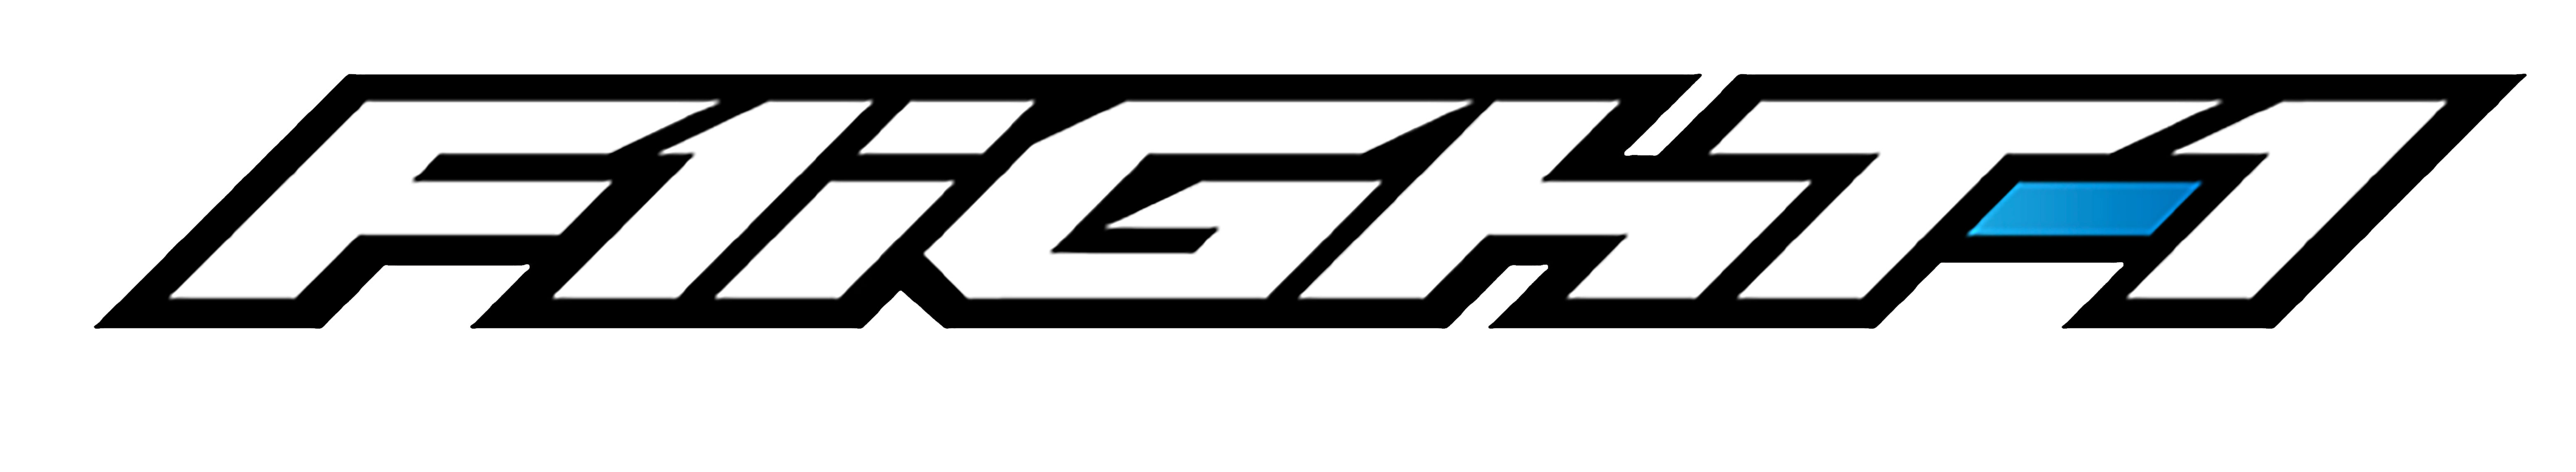 Flight-1 logo